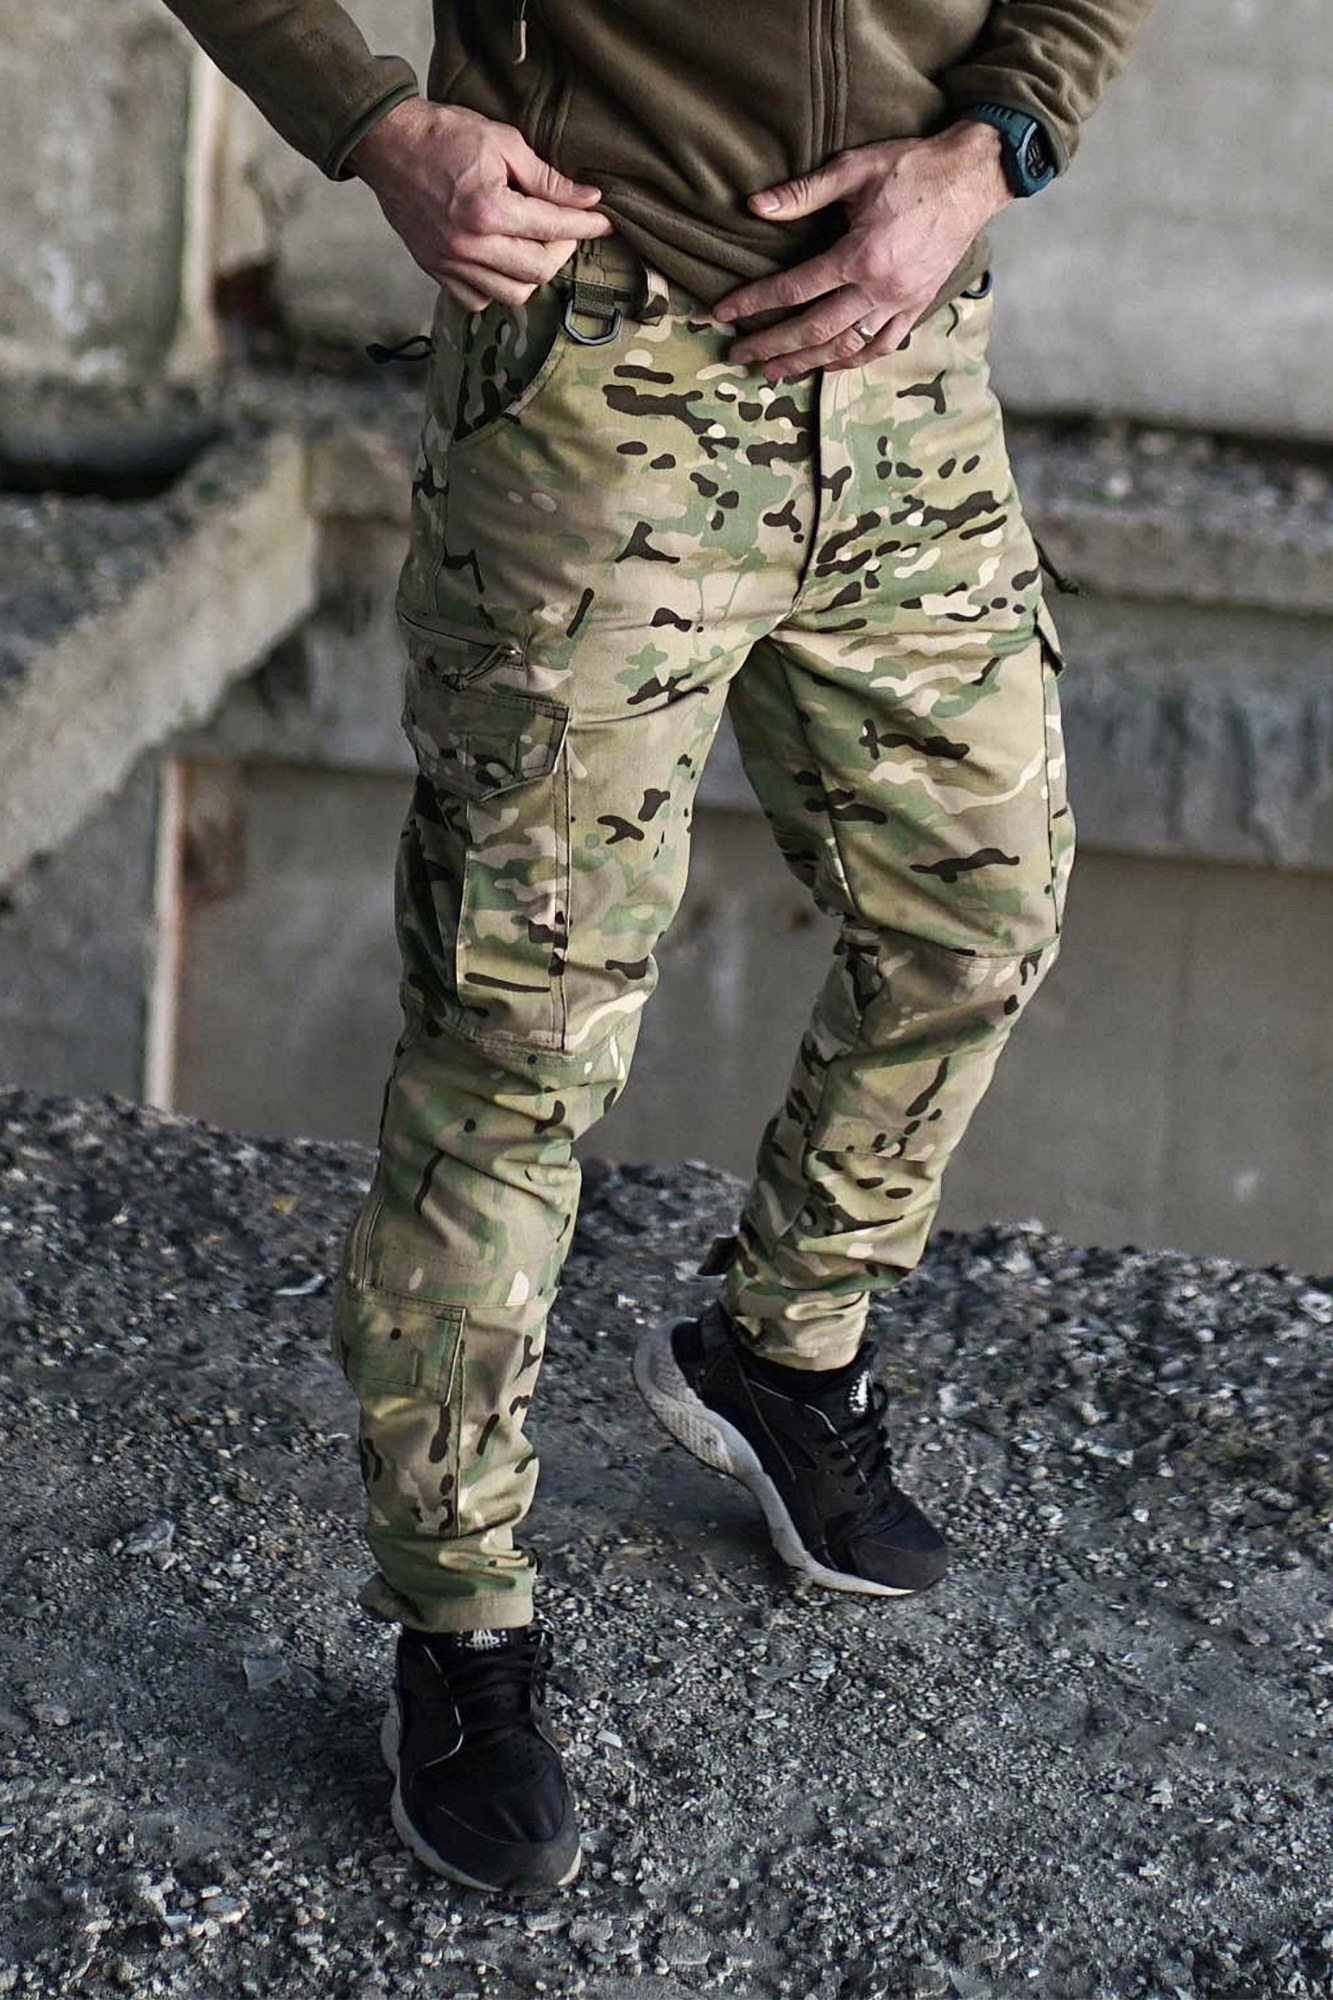 Buy U.S. Army CP Multicam Camo ACU Combat Coat Pant BDU Uniform Sets Jacket  Shirt & Pants Suit Online at desertcartINDIA